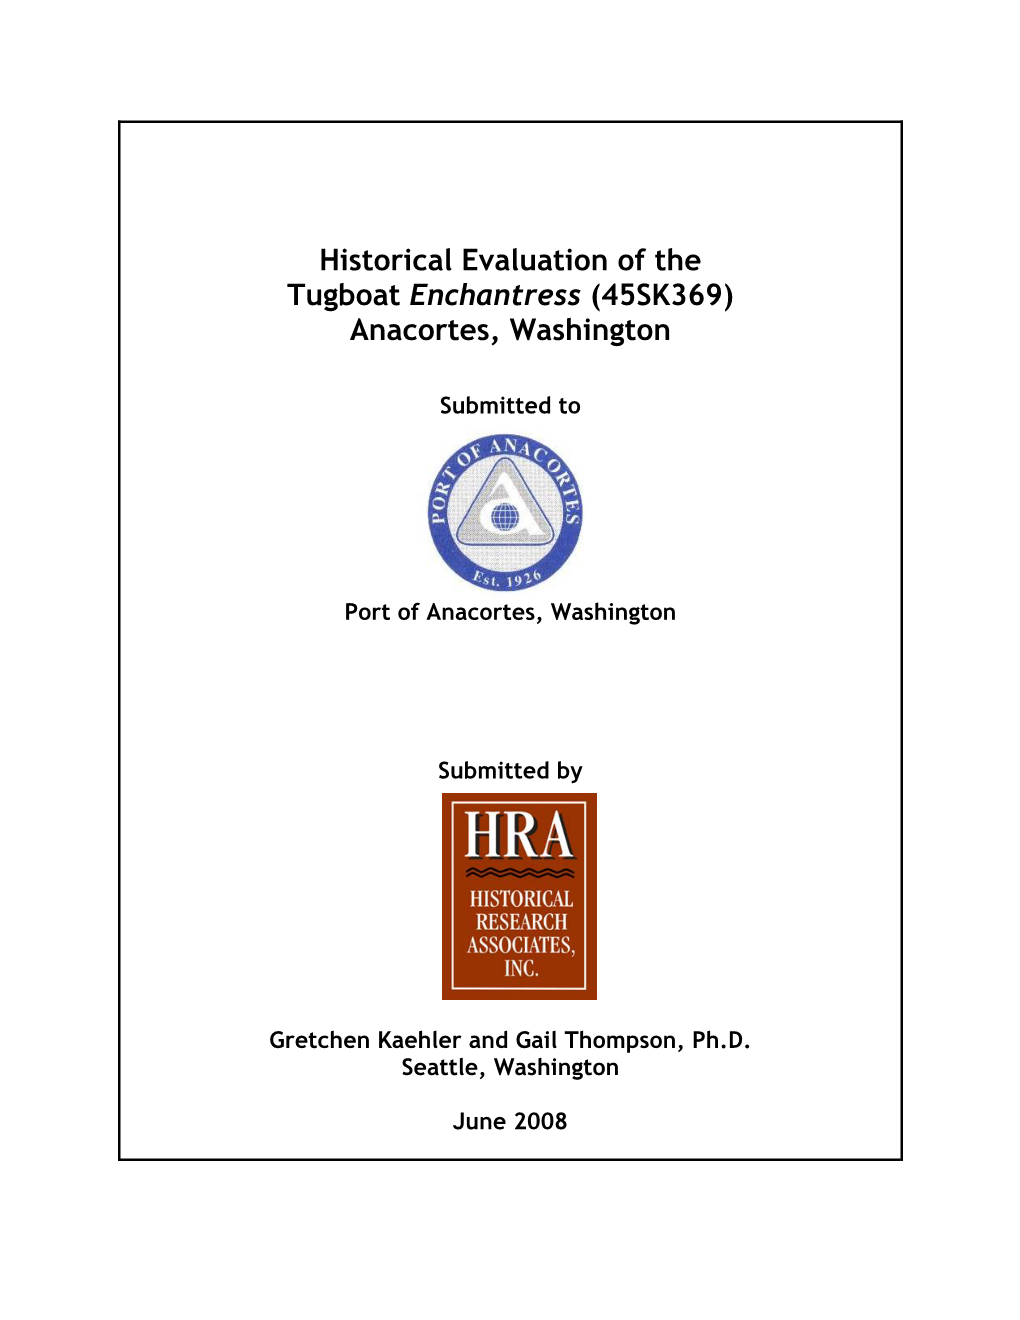 Historical Evaluation of the Tugboat Enchantress (45SK369) Anacortes, Washington